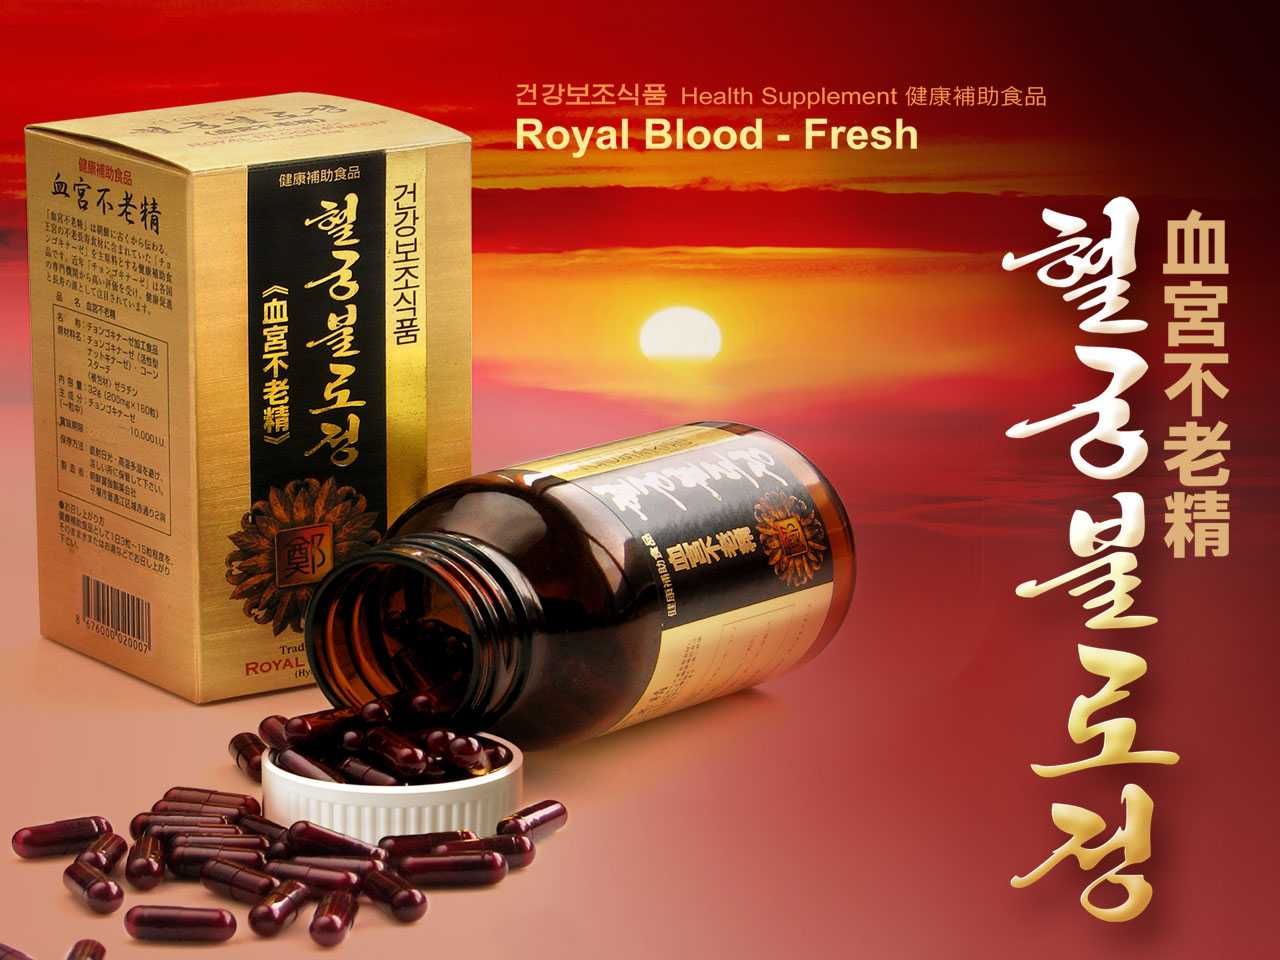 "Royal Blood-Freesh" koncentrat soi z Korei Północnej